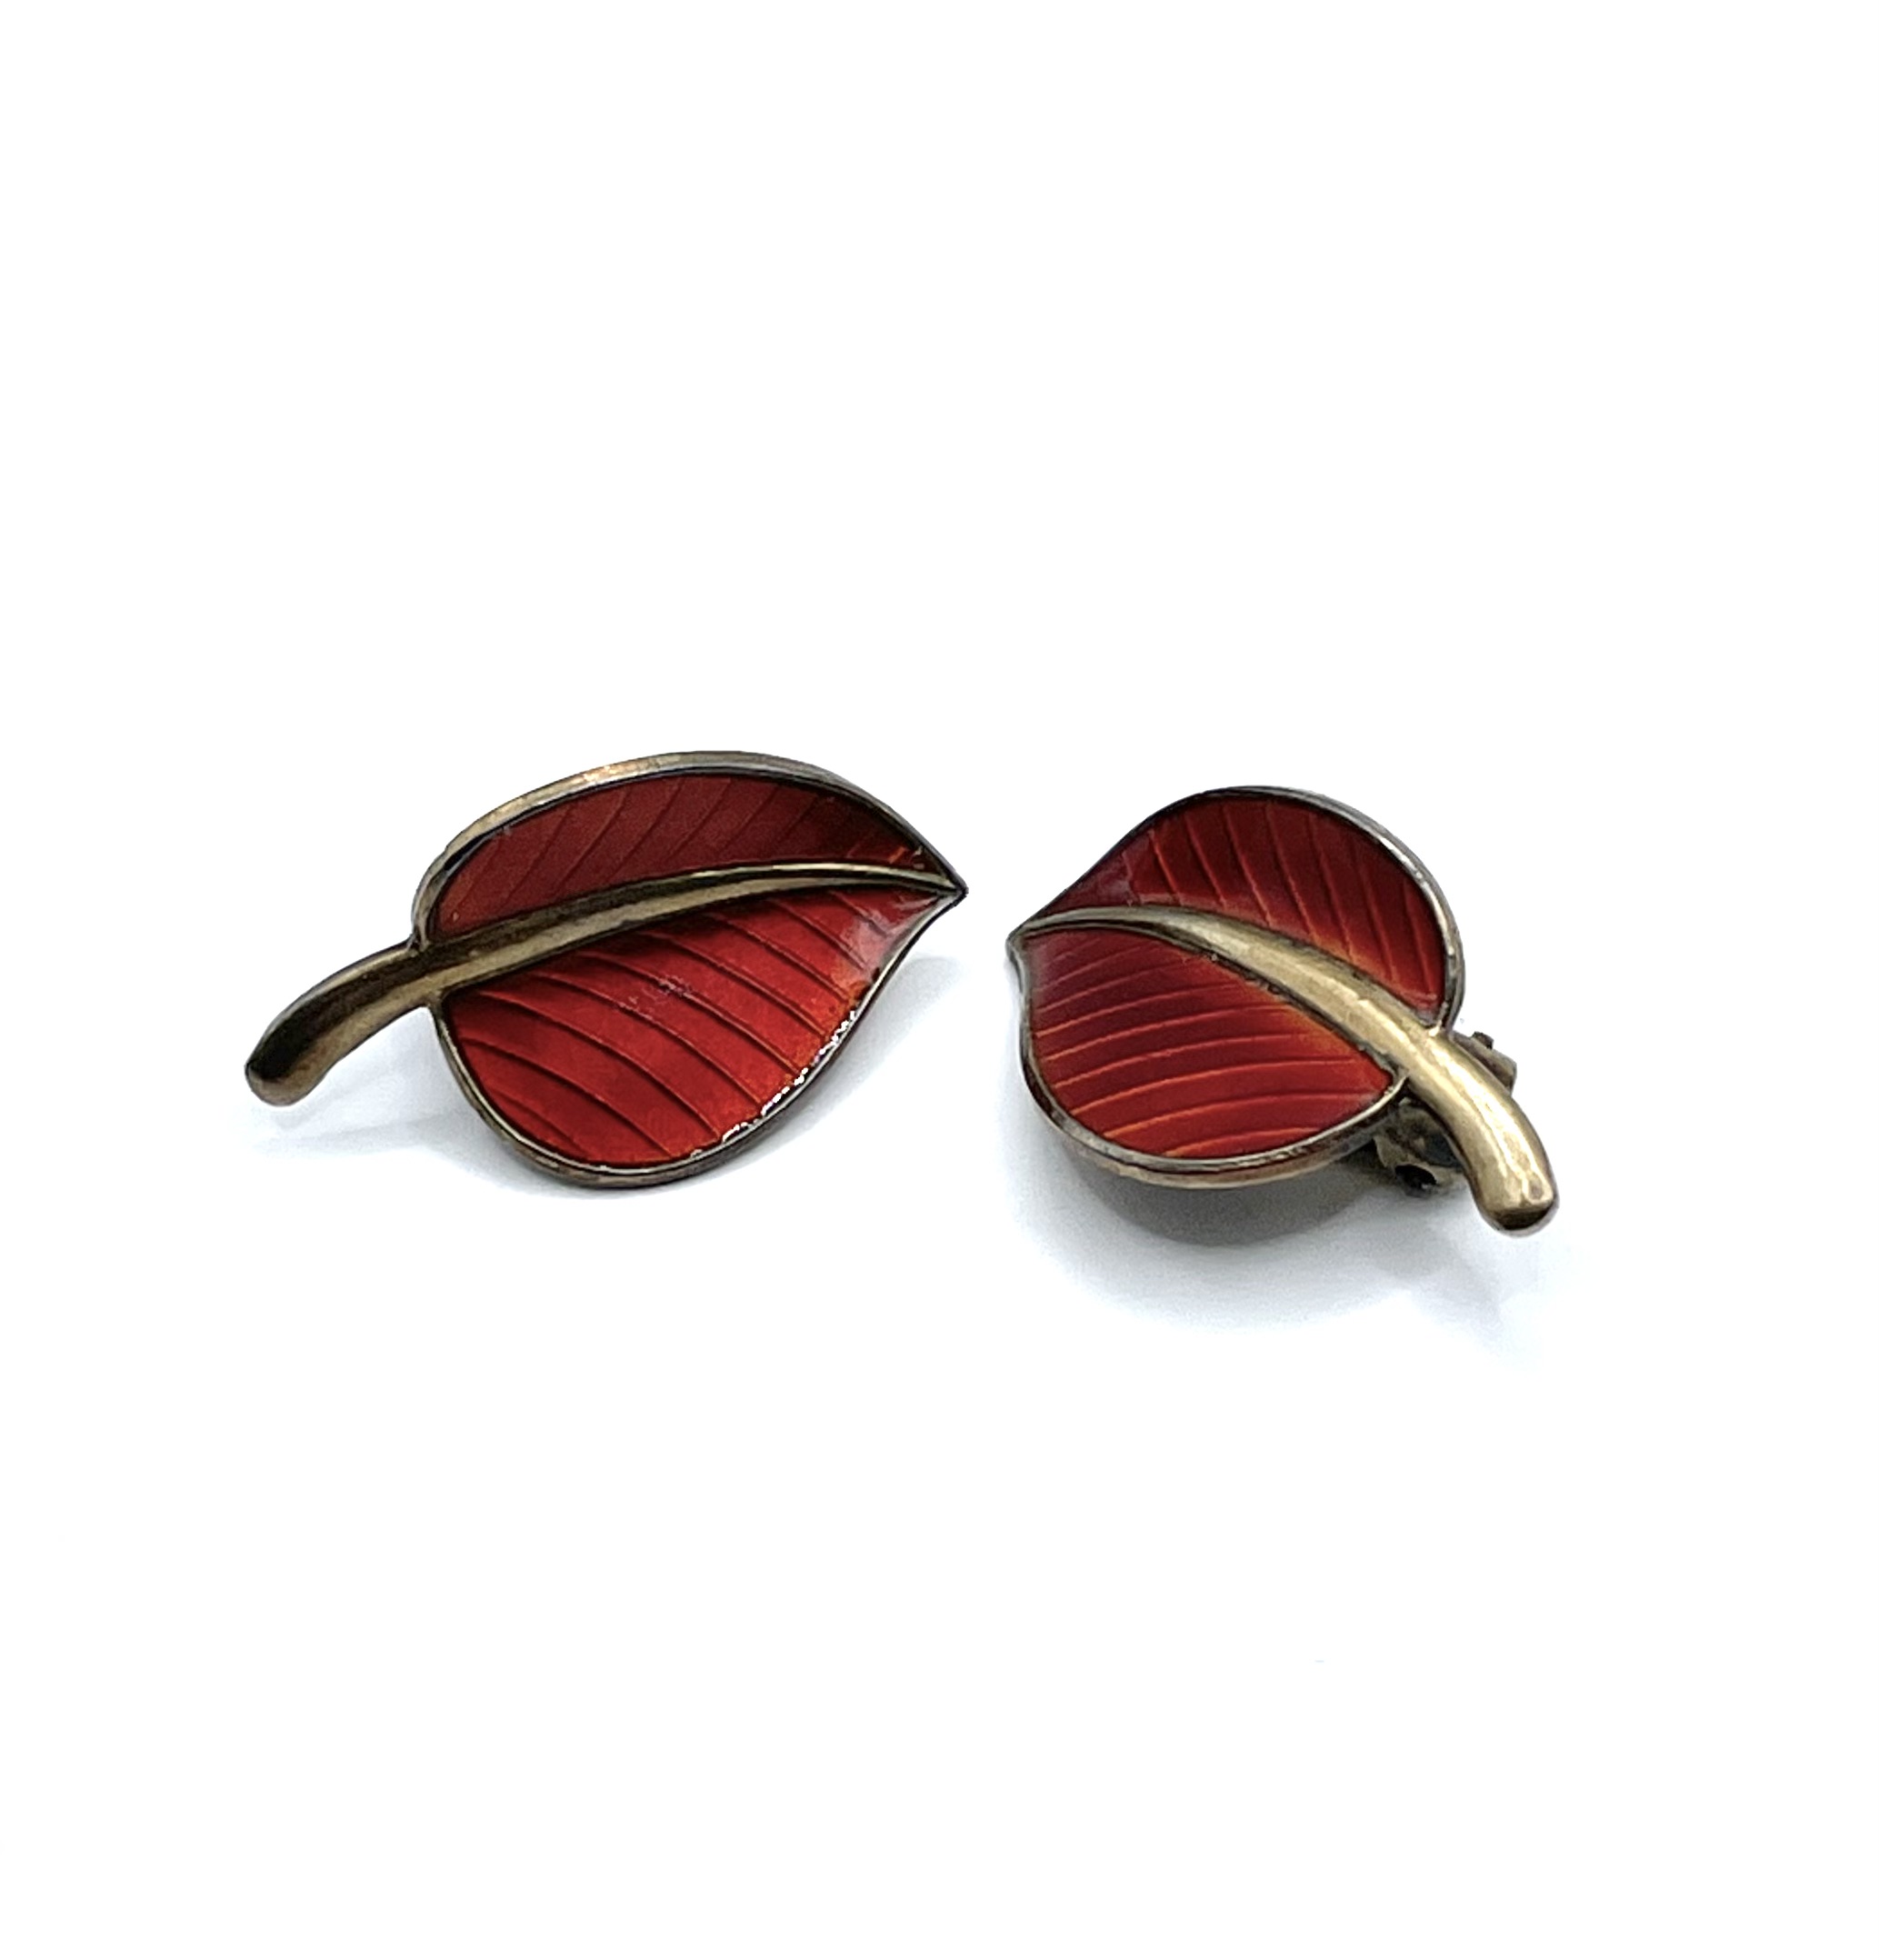 Art Deco enameled earrings